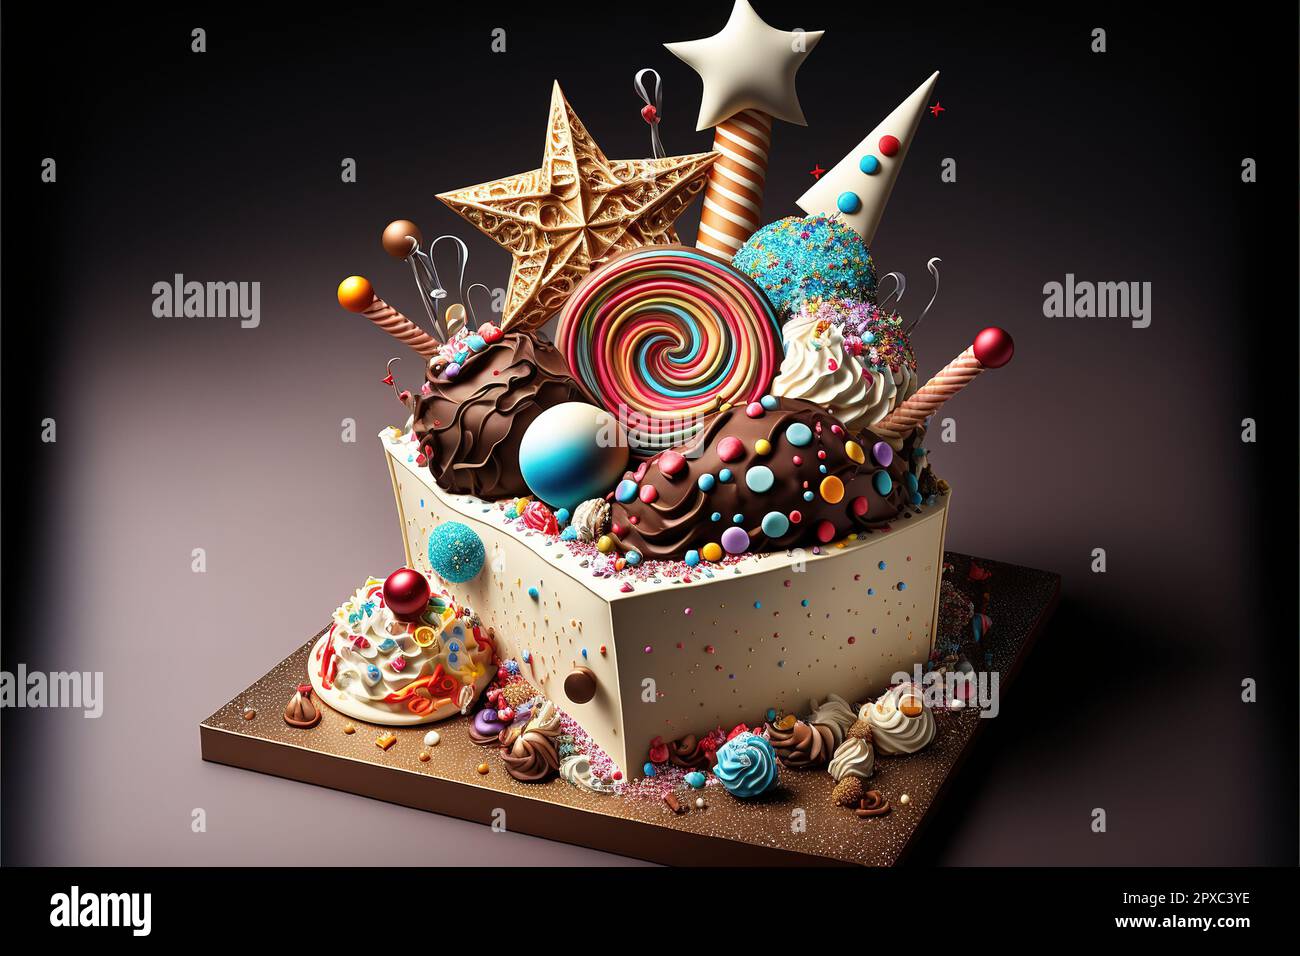 Gâteau D'anniversaire De Fête De Célébration Avec Beaucoup De Glaçage Et De  Décorations Concept D'anniversaire De Fête De Célébration